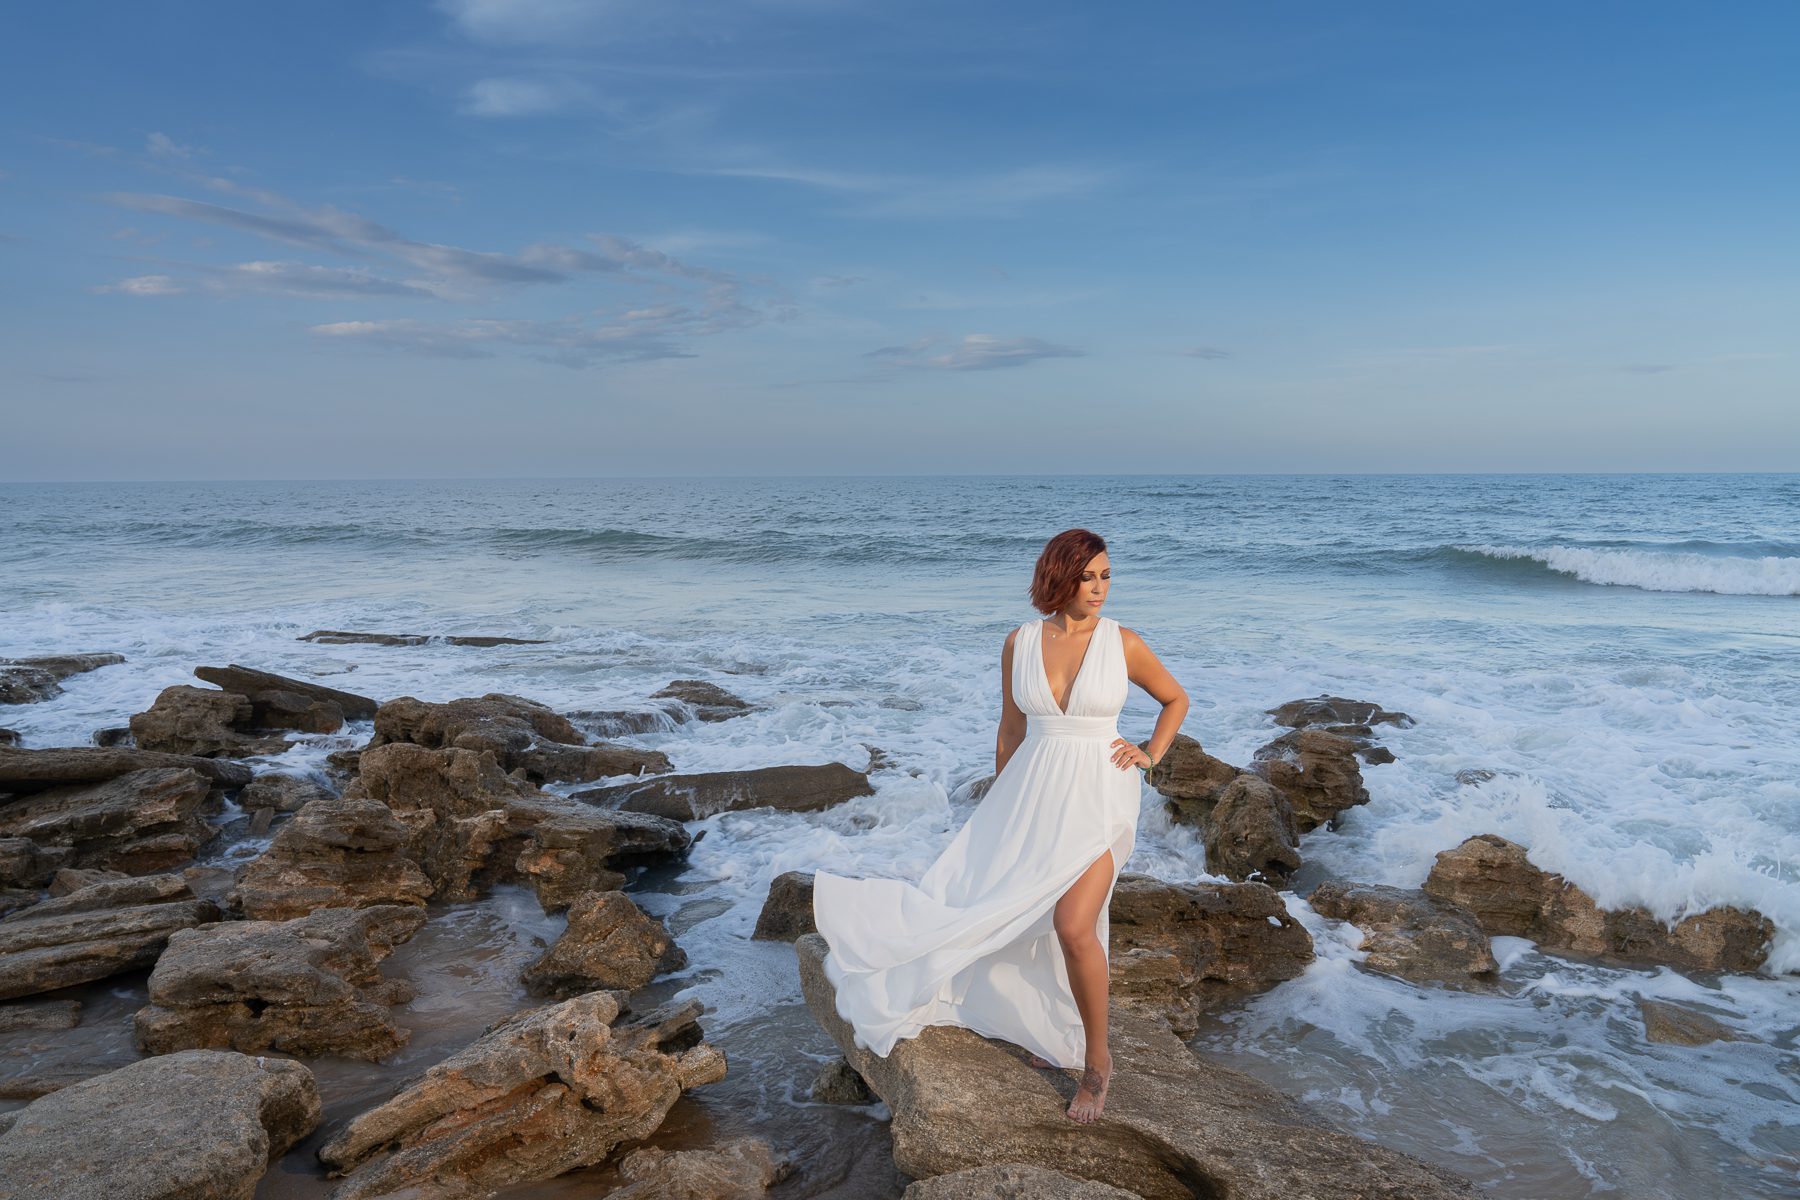 Woman in white dress on stones seaside